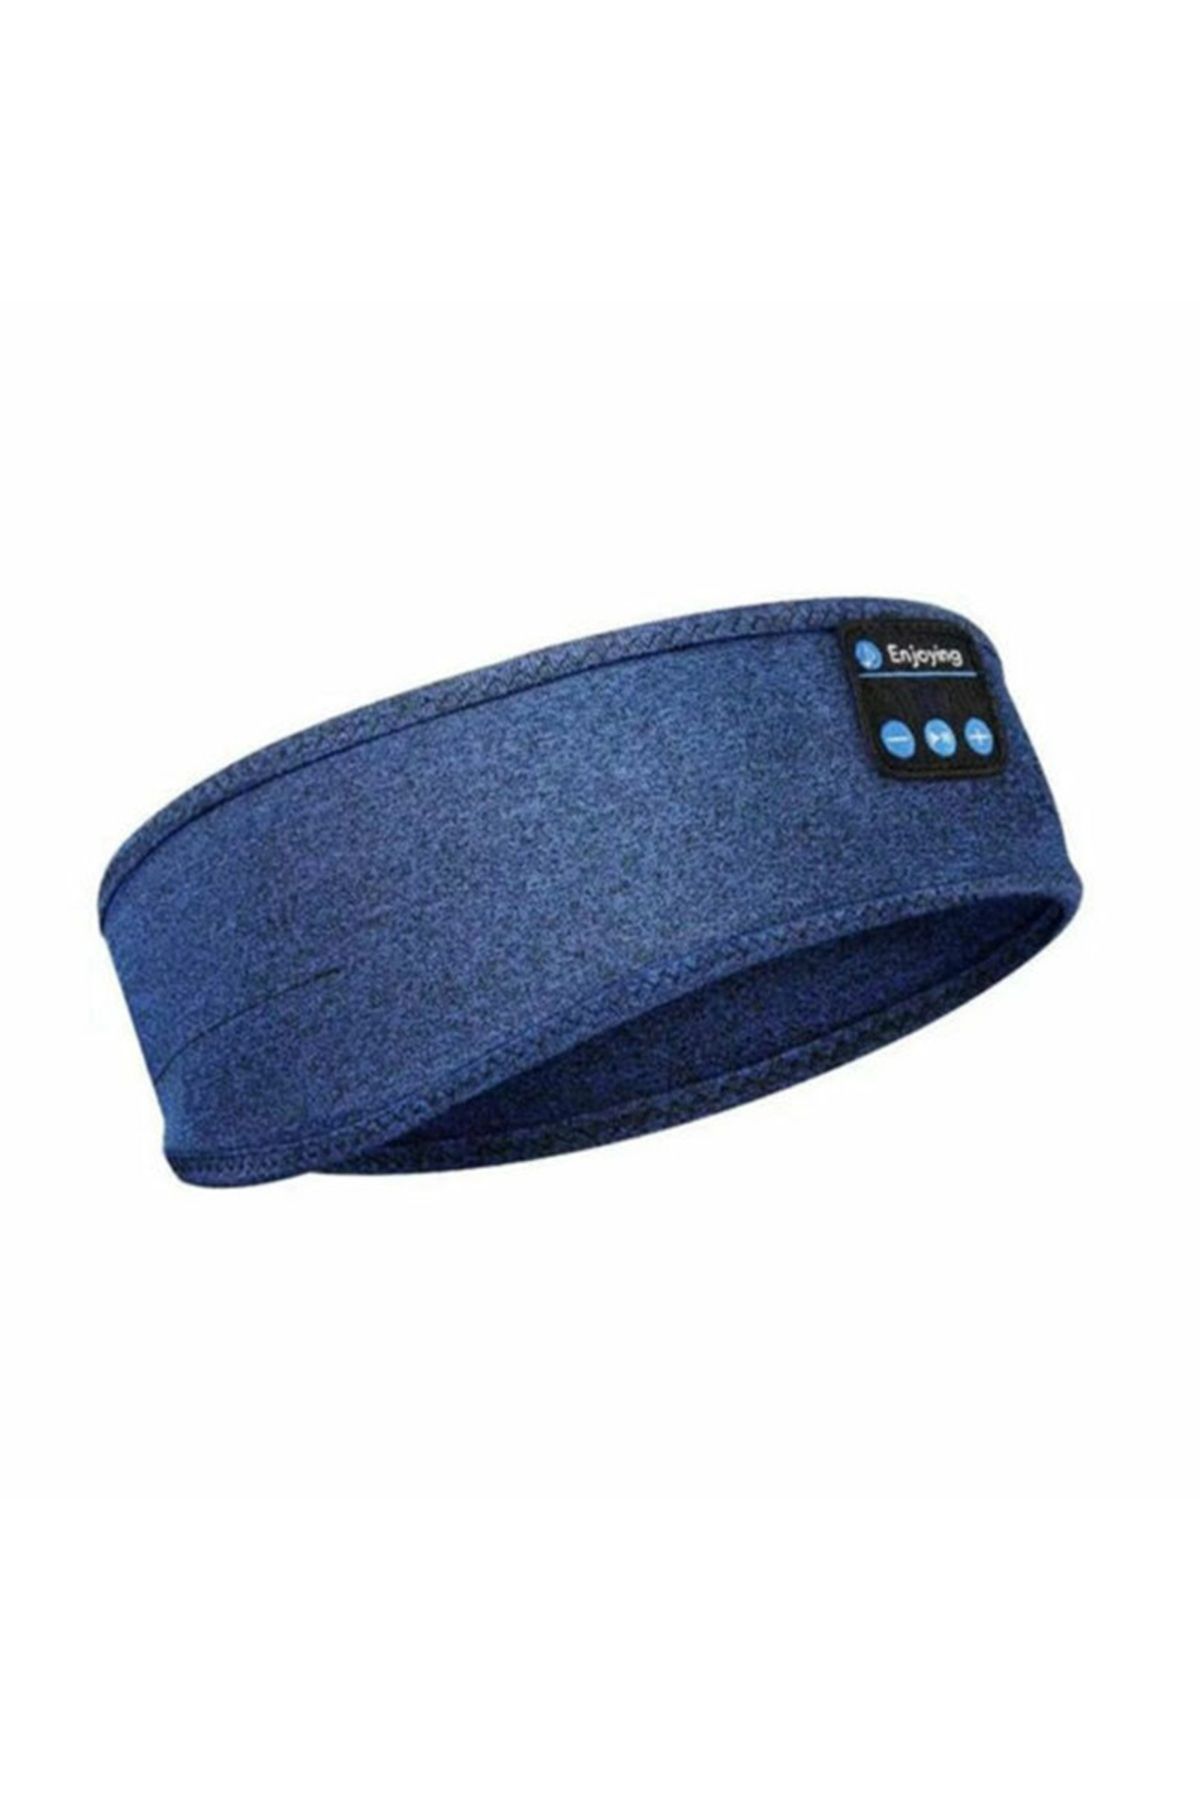 La Vie Design Mavi Yeni Nesil Yumuşak Rahat Su Geçirmez Kablosuz Bluetooth Spor Uyku Kumaş Bandana Müzik Kulaklık